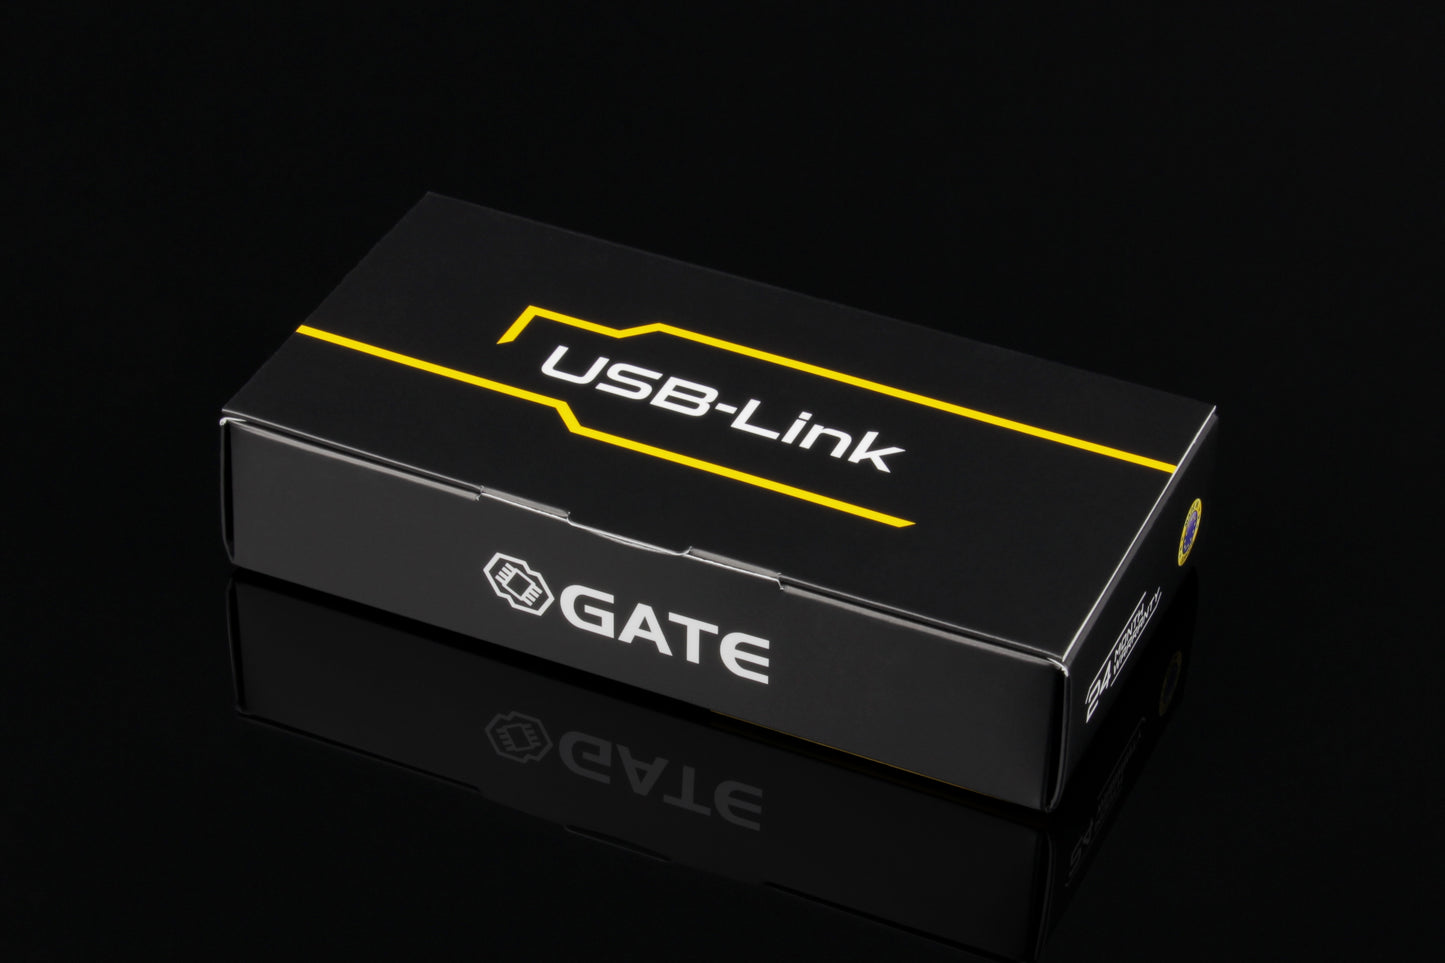 USB-Link for GCS app